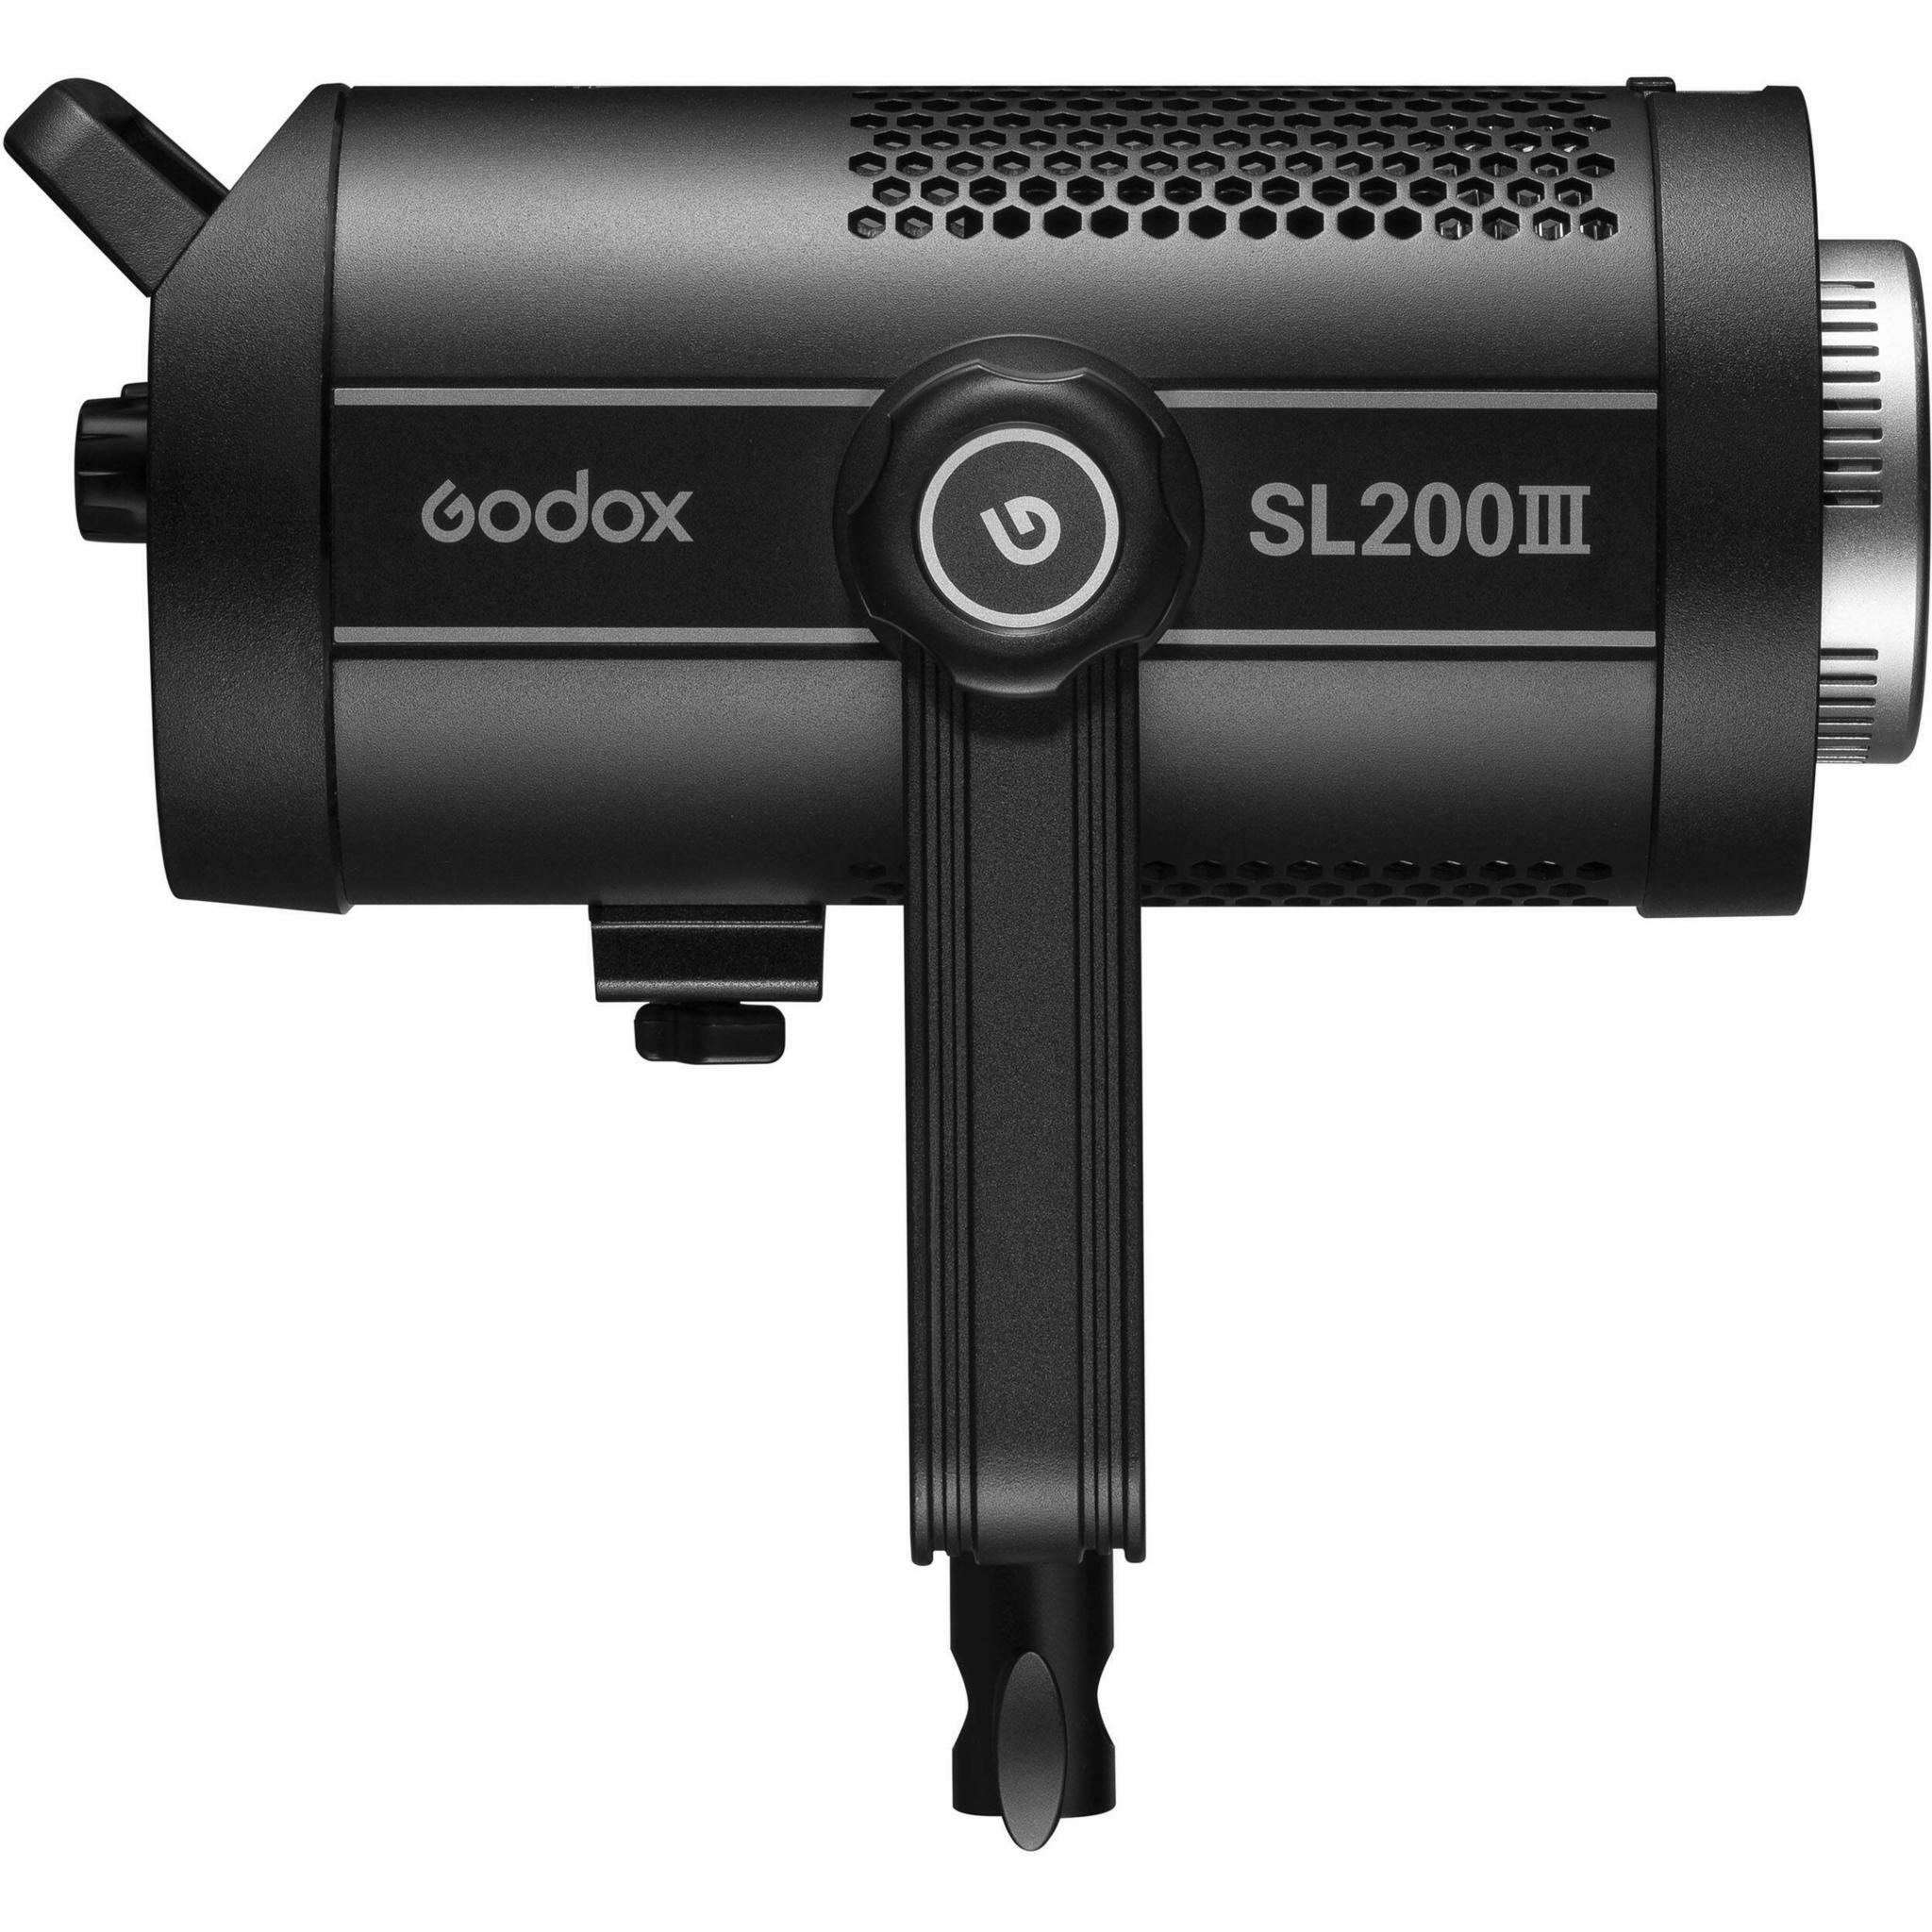    Godox SL200III    Ultra-mart